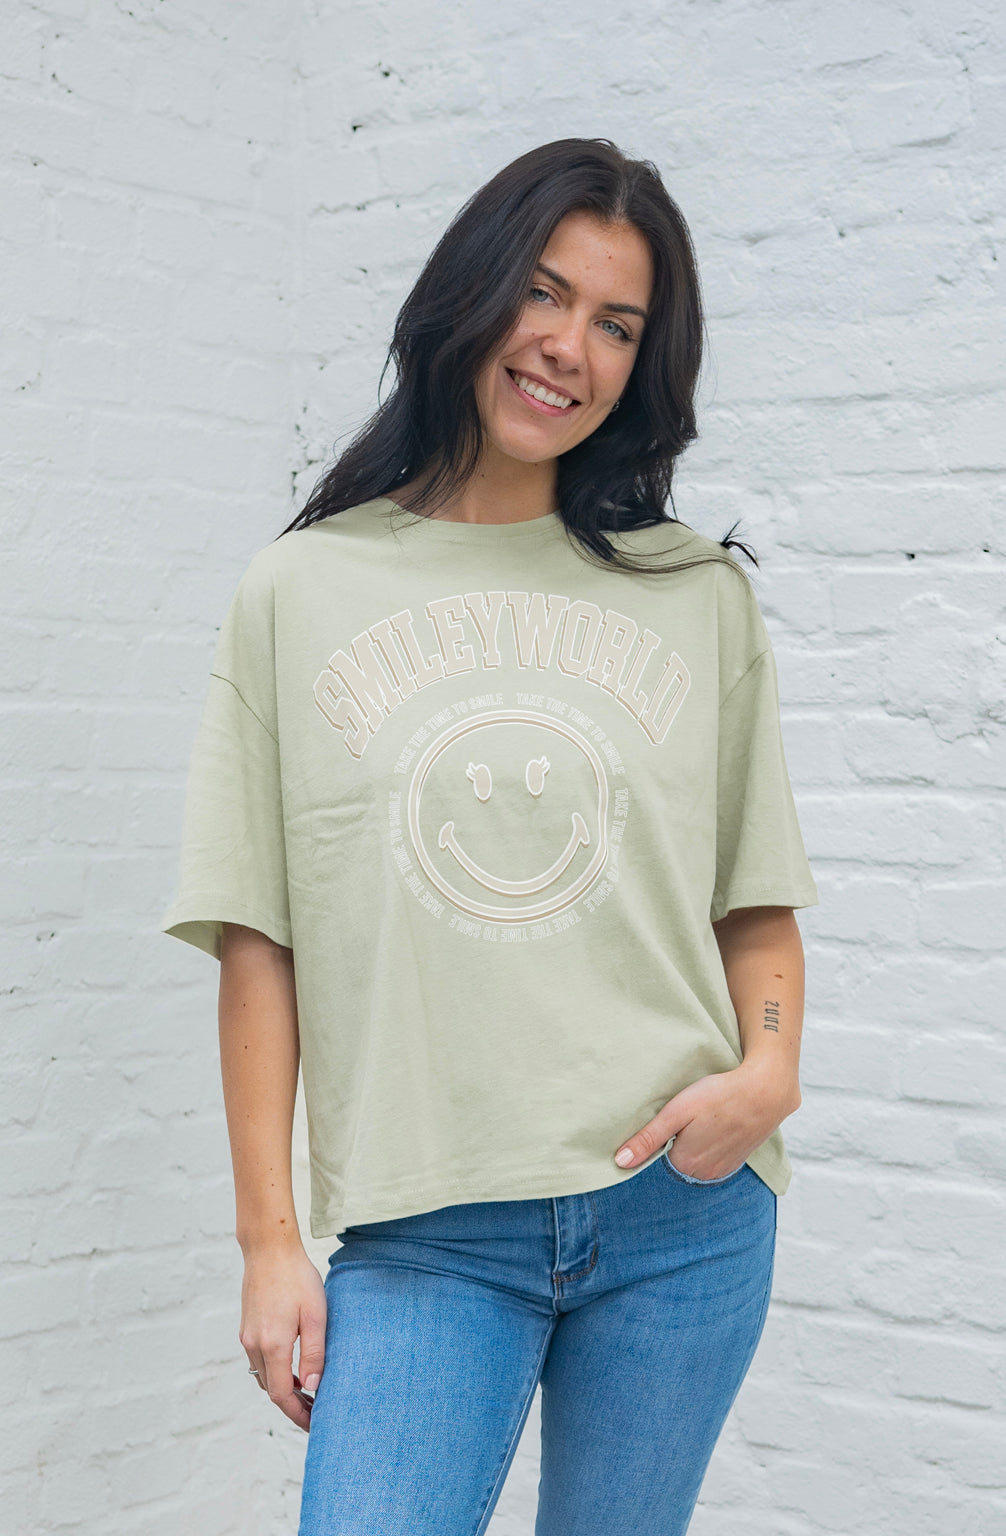 T-Shirt Smiley mit weitem Arm (Pistazie)